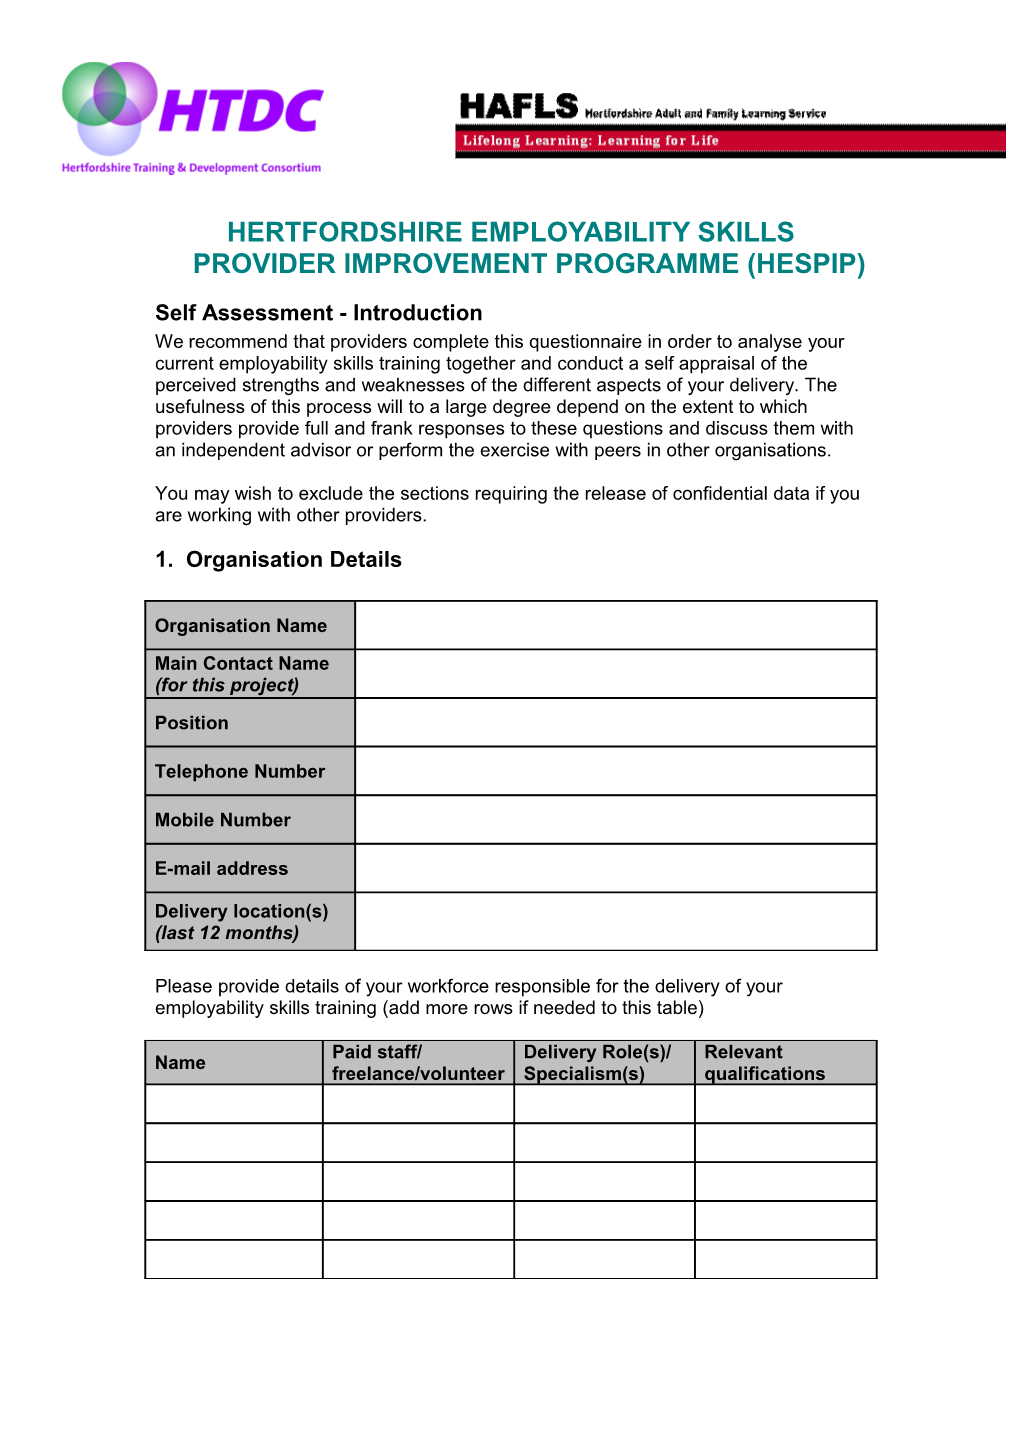 Hertfordshire Employability Skills Provider Improvement Programme (Hespip)